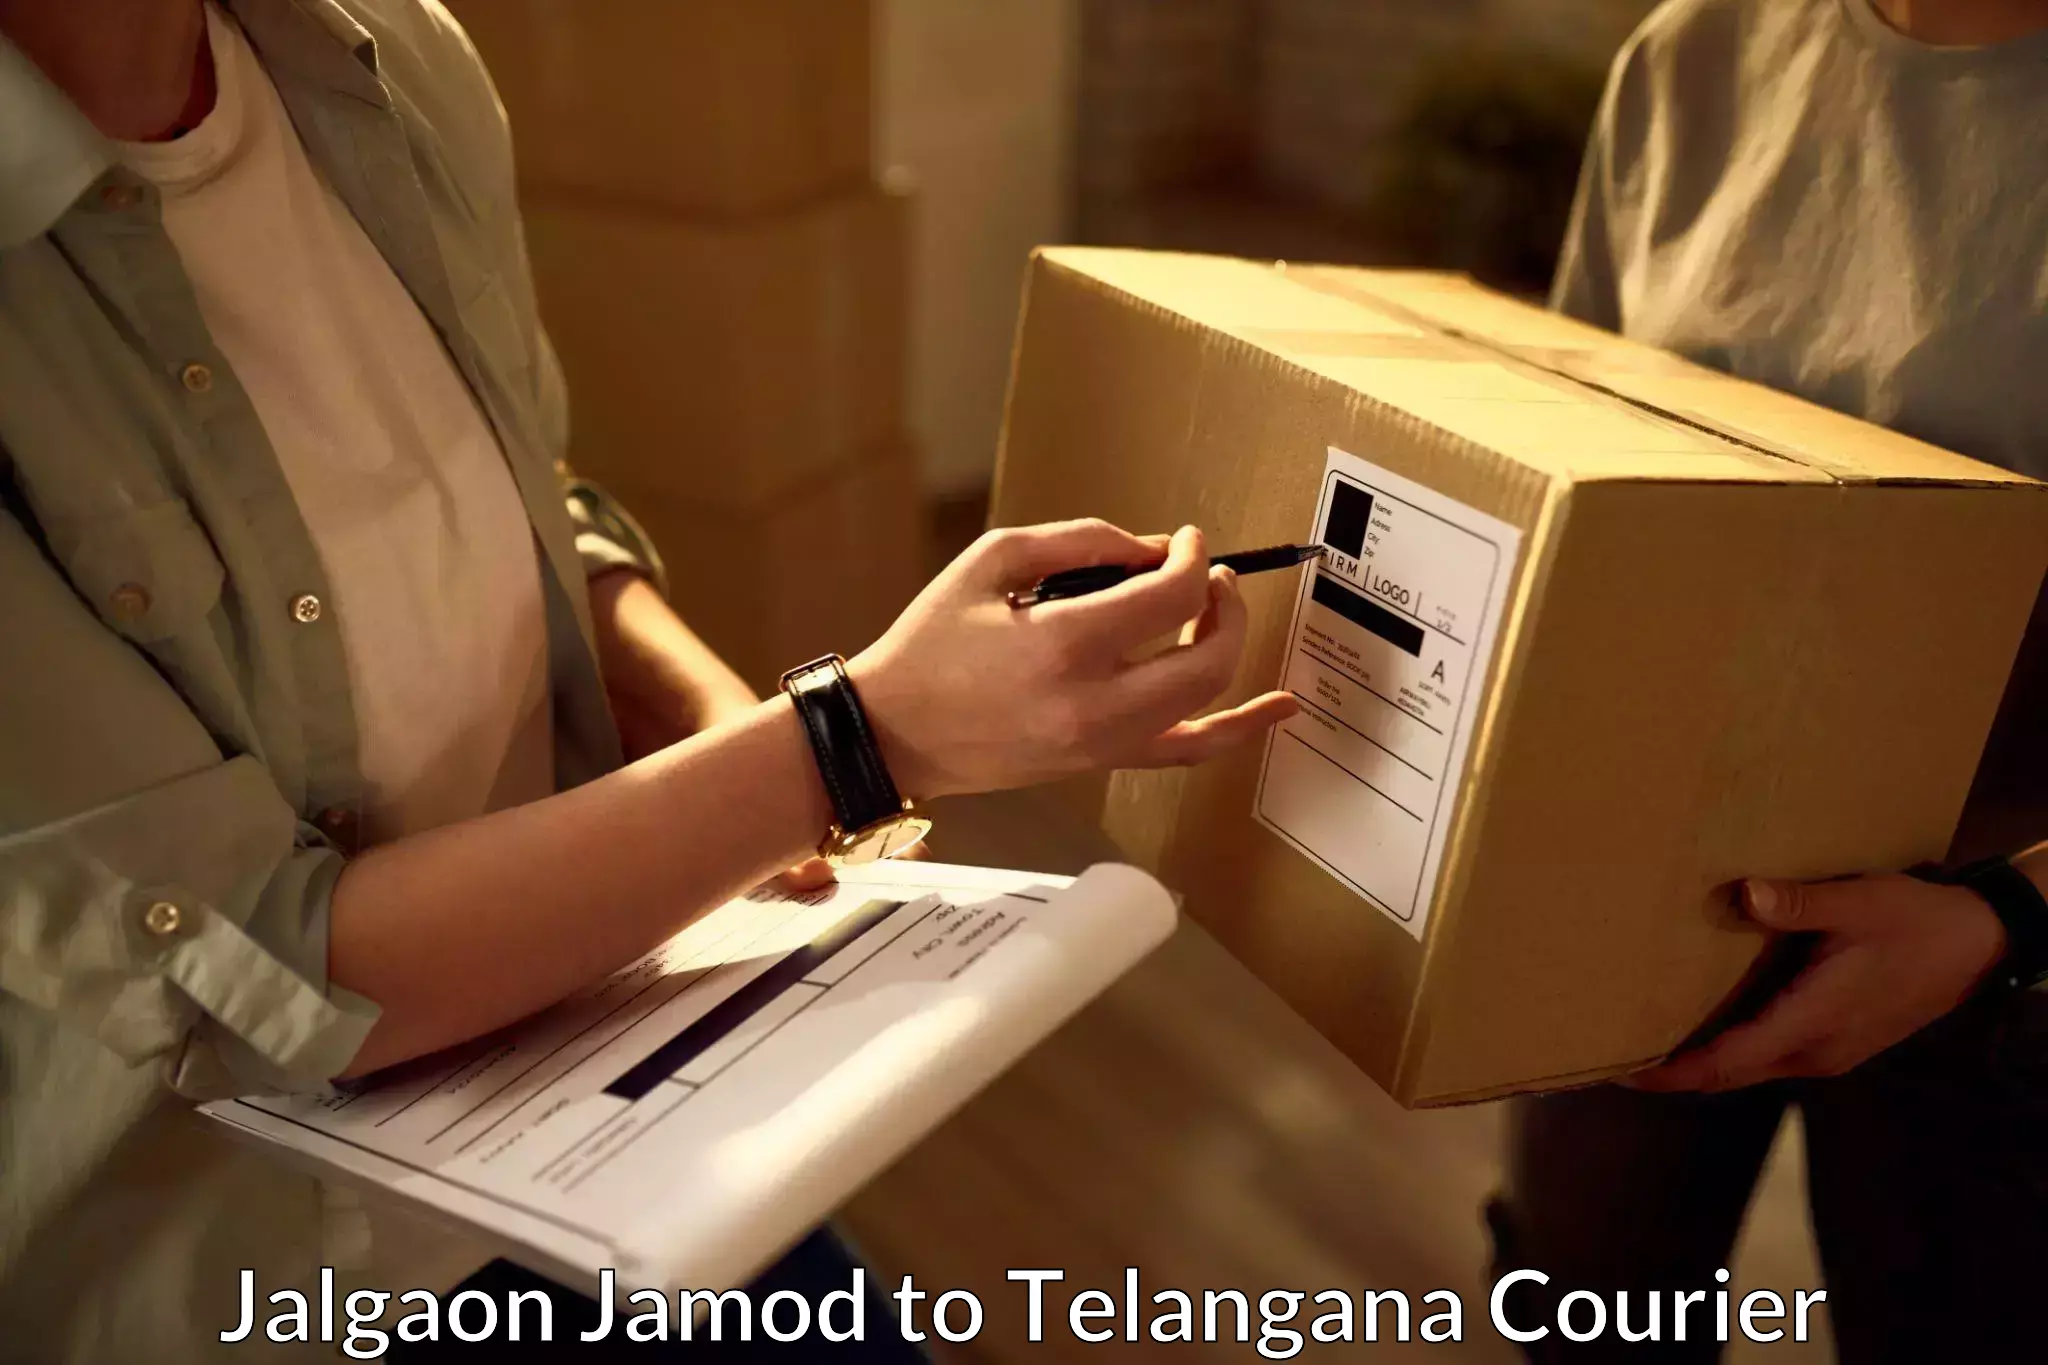 Urgent courier needs Jalgaon Jamod to Mahabub Nagar